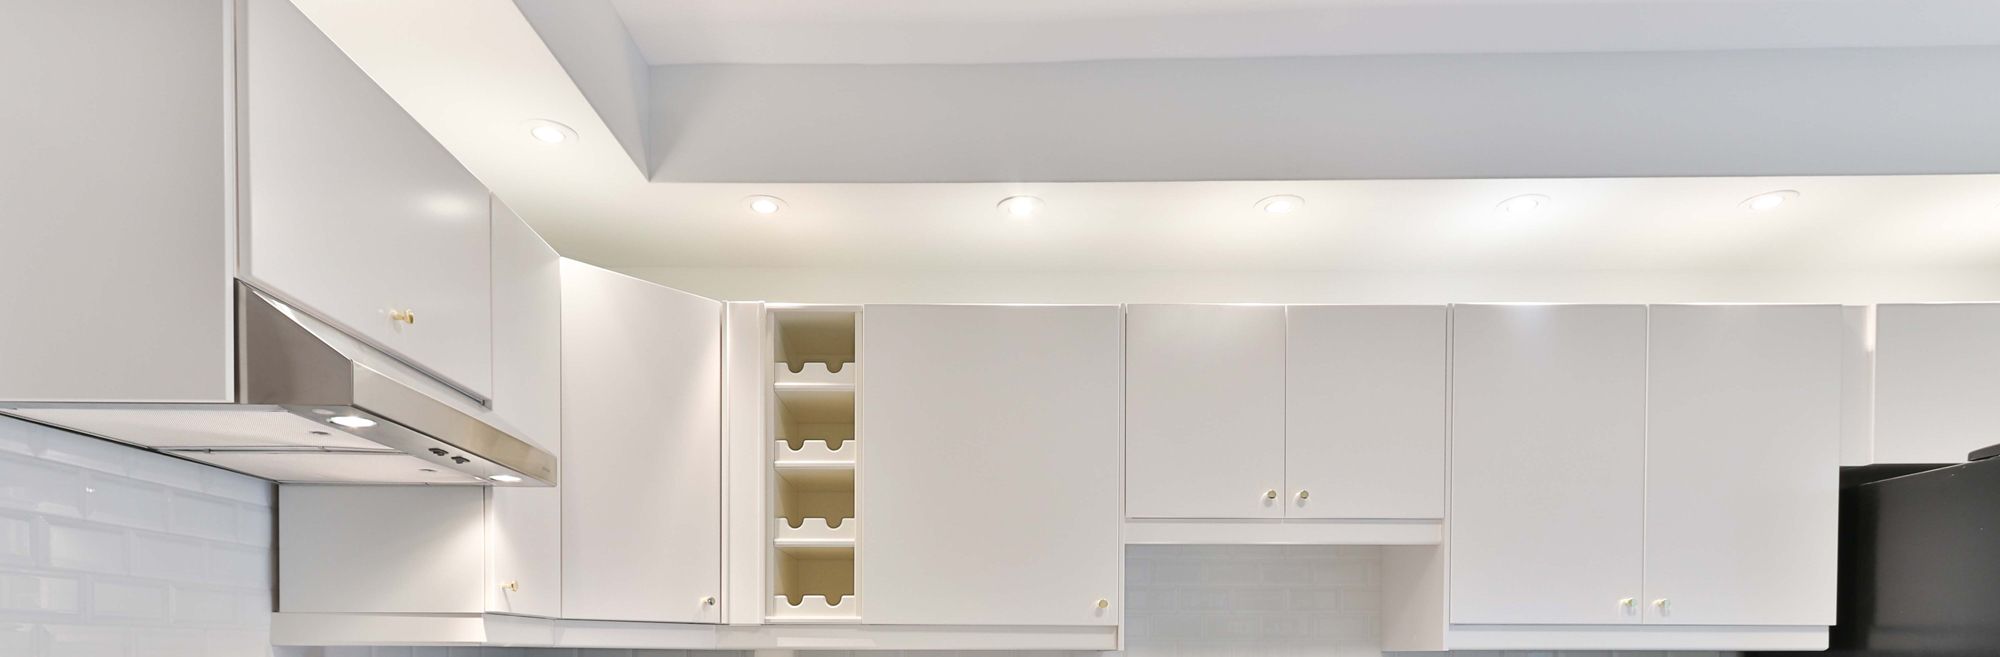 Downlights in a white kitchen